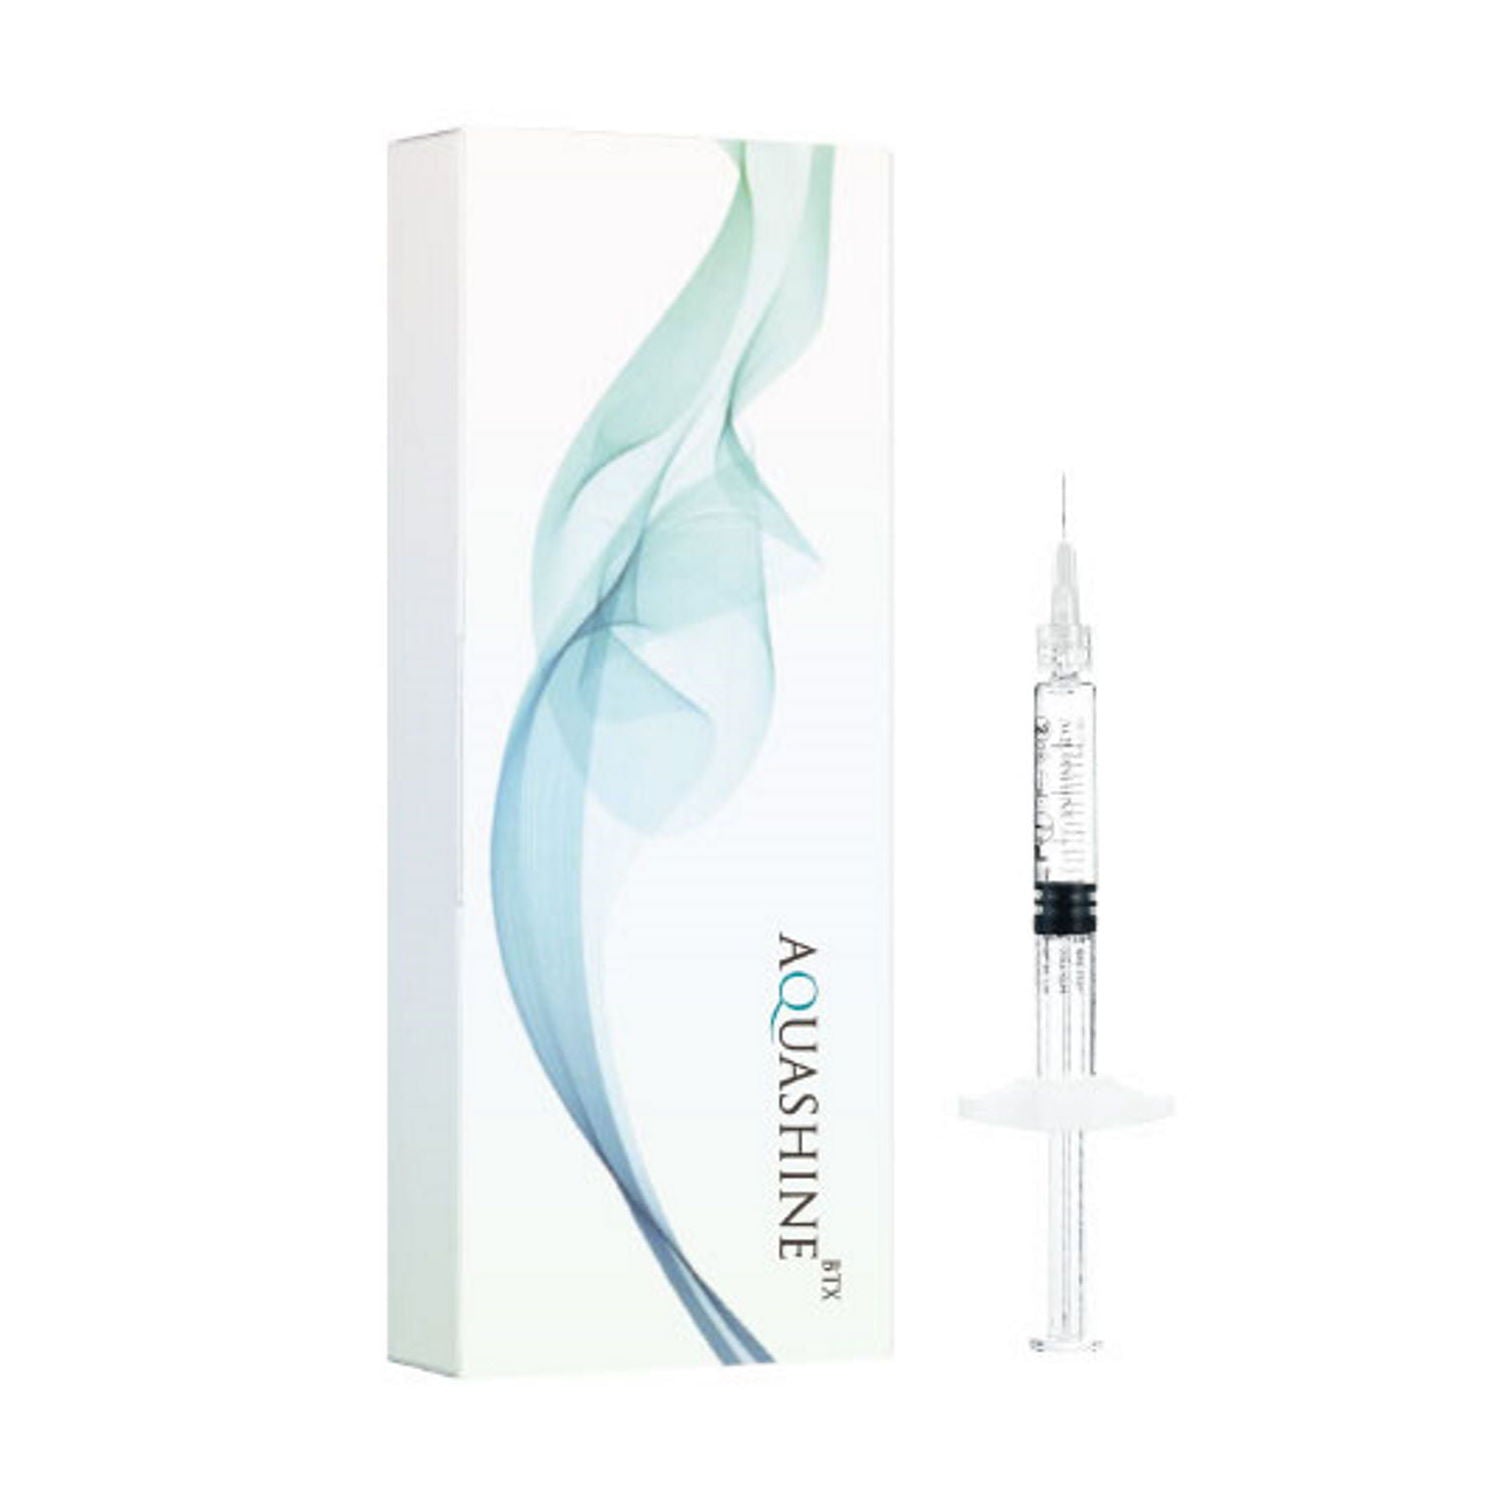 Aquashine BTX
Contiene 1 siringa da 2ml
﻿Indicato per offrire una soluzione completa nella terapia anti-età﻿. Effetto 3 in 1: ristrutturazione, rilassamento, correzione e iperpigmentazione.